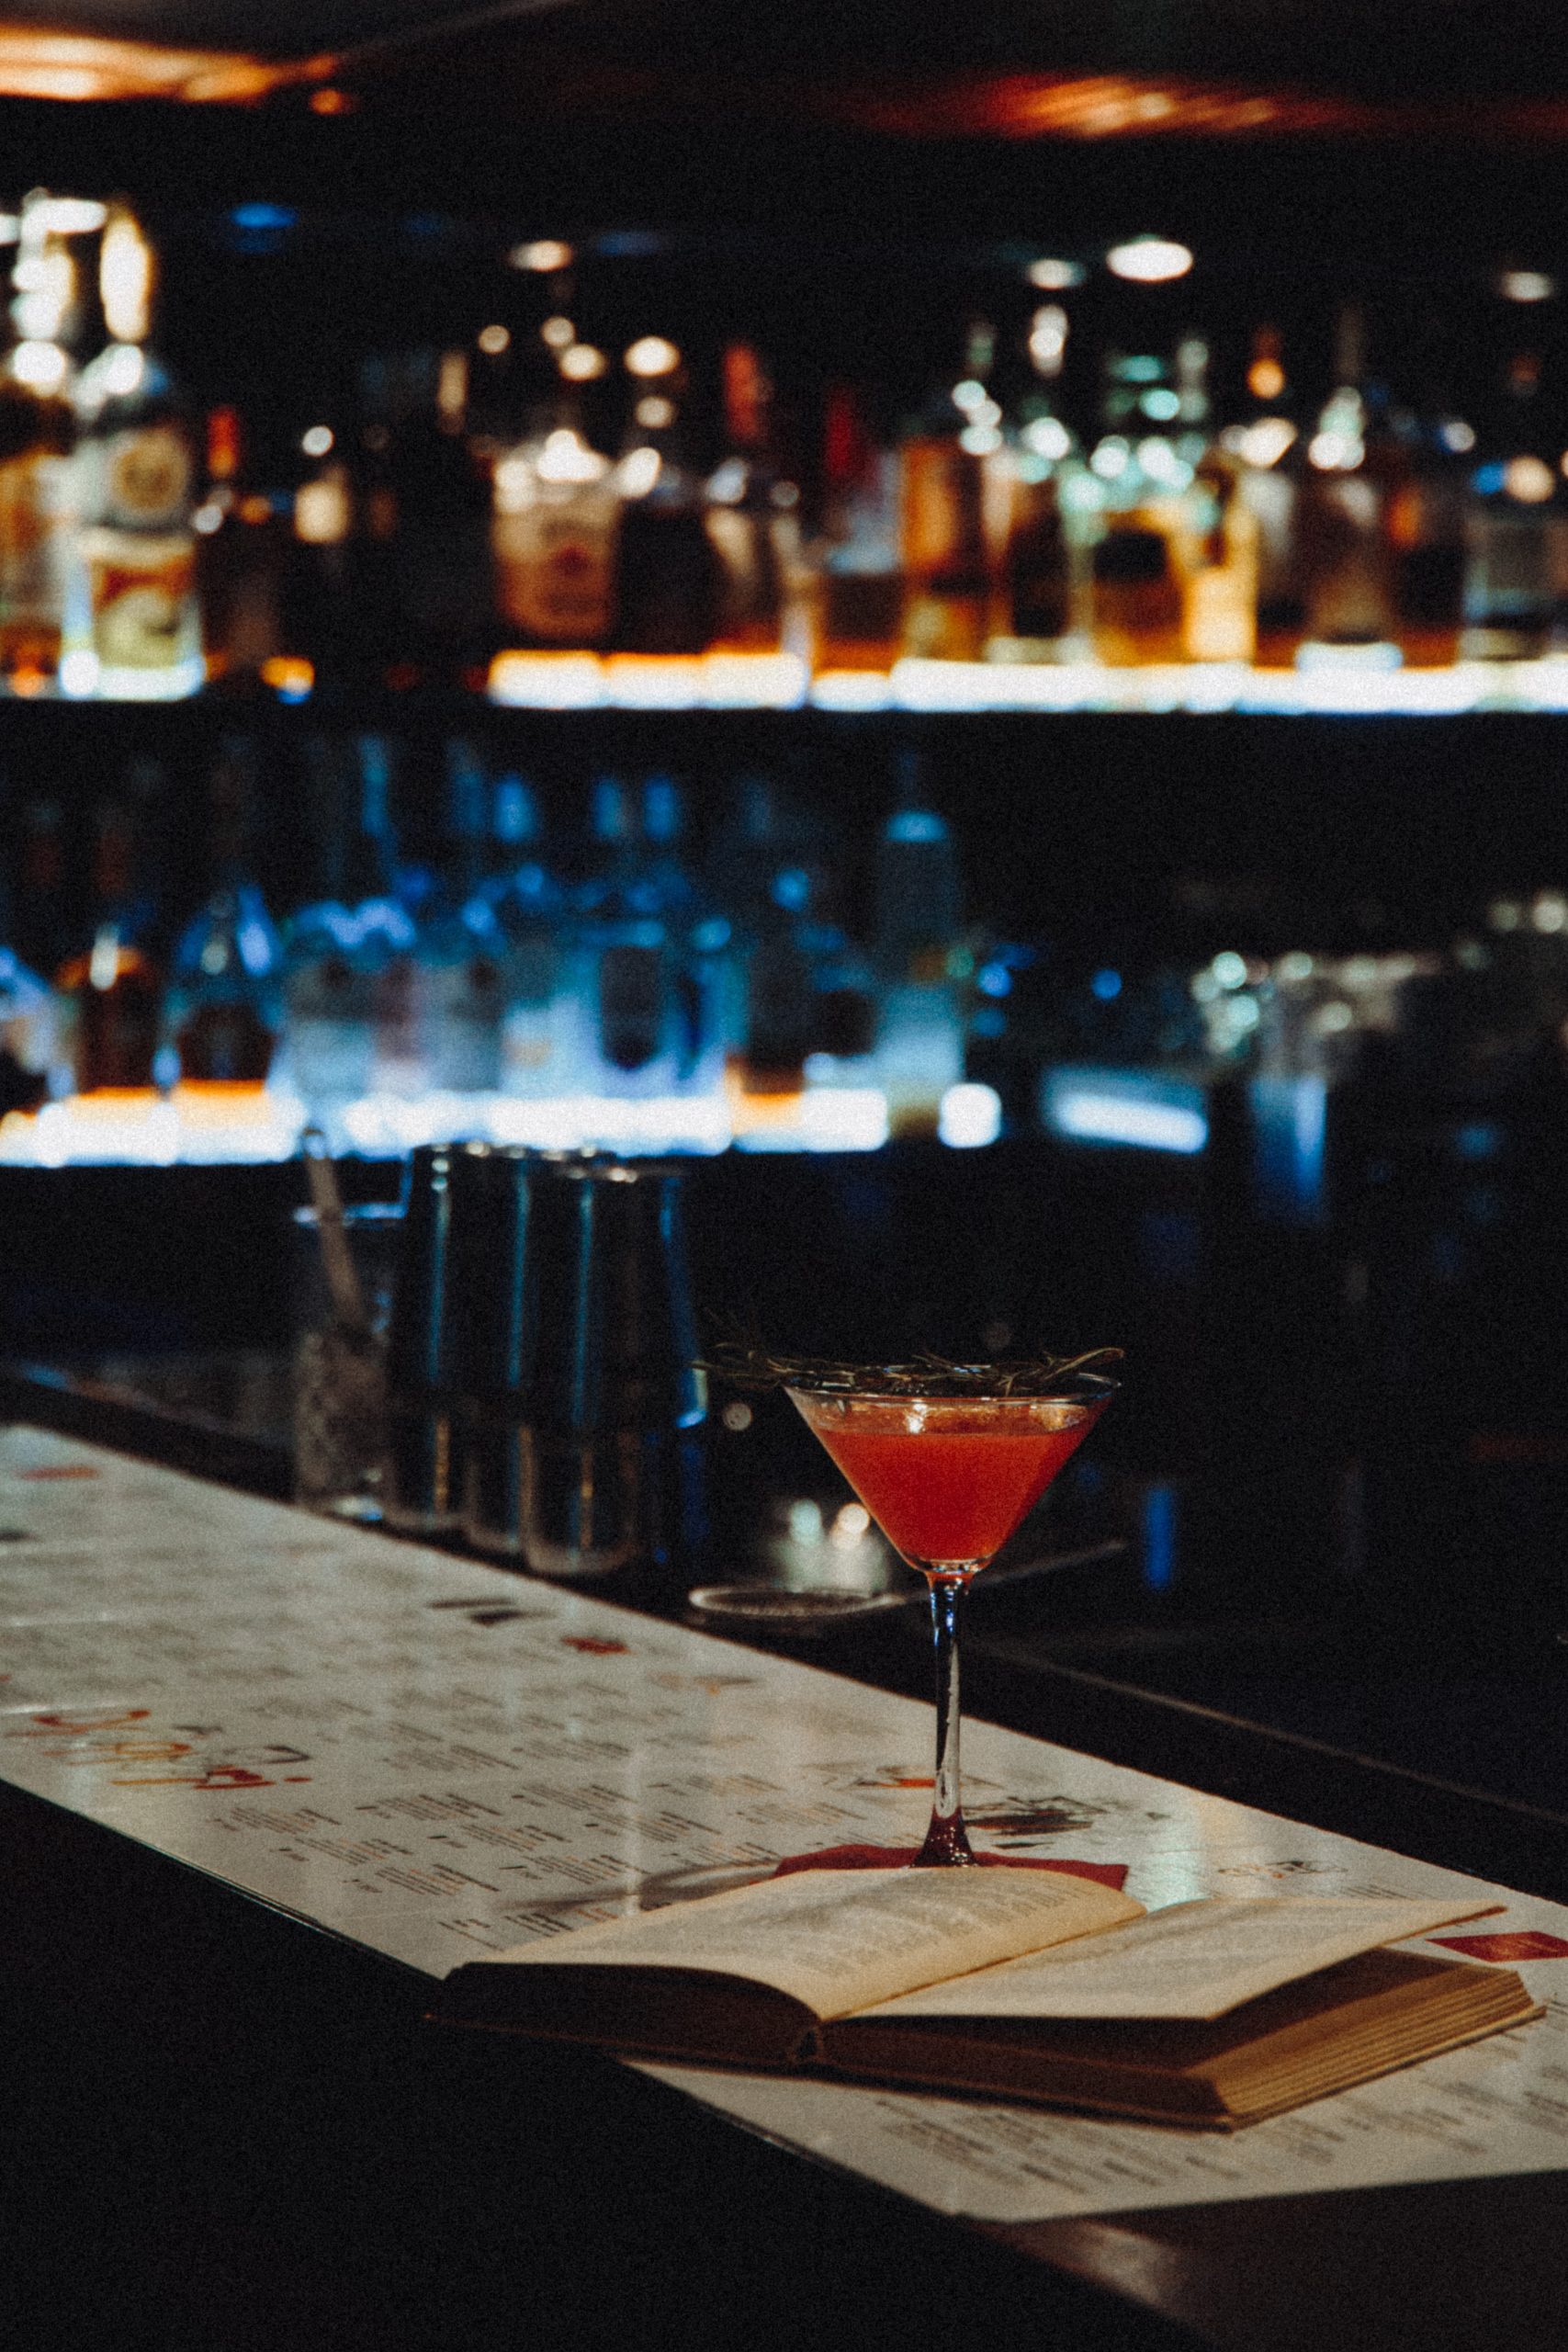 daiquiri cocktail